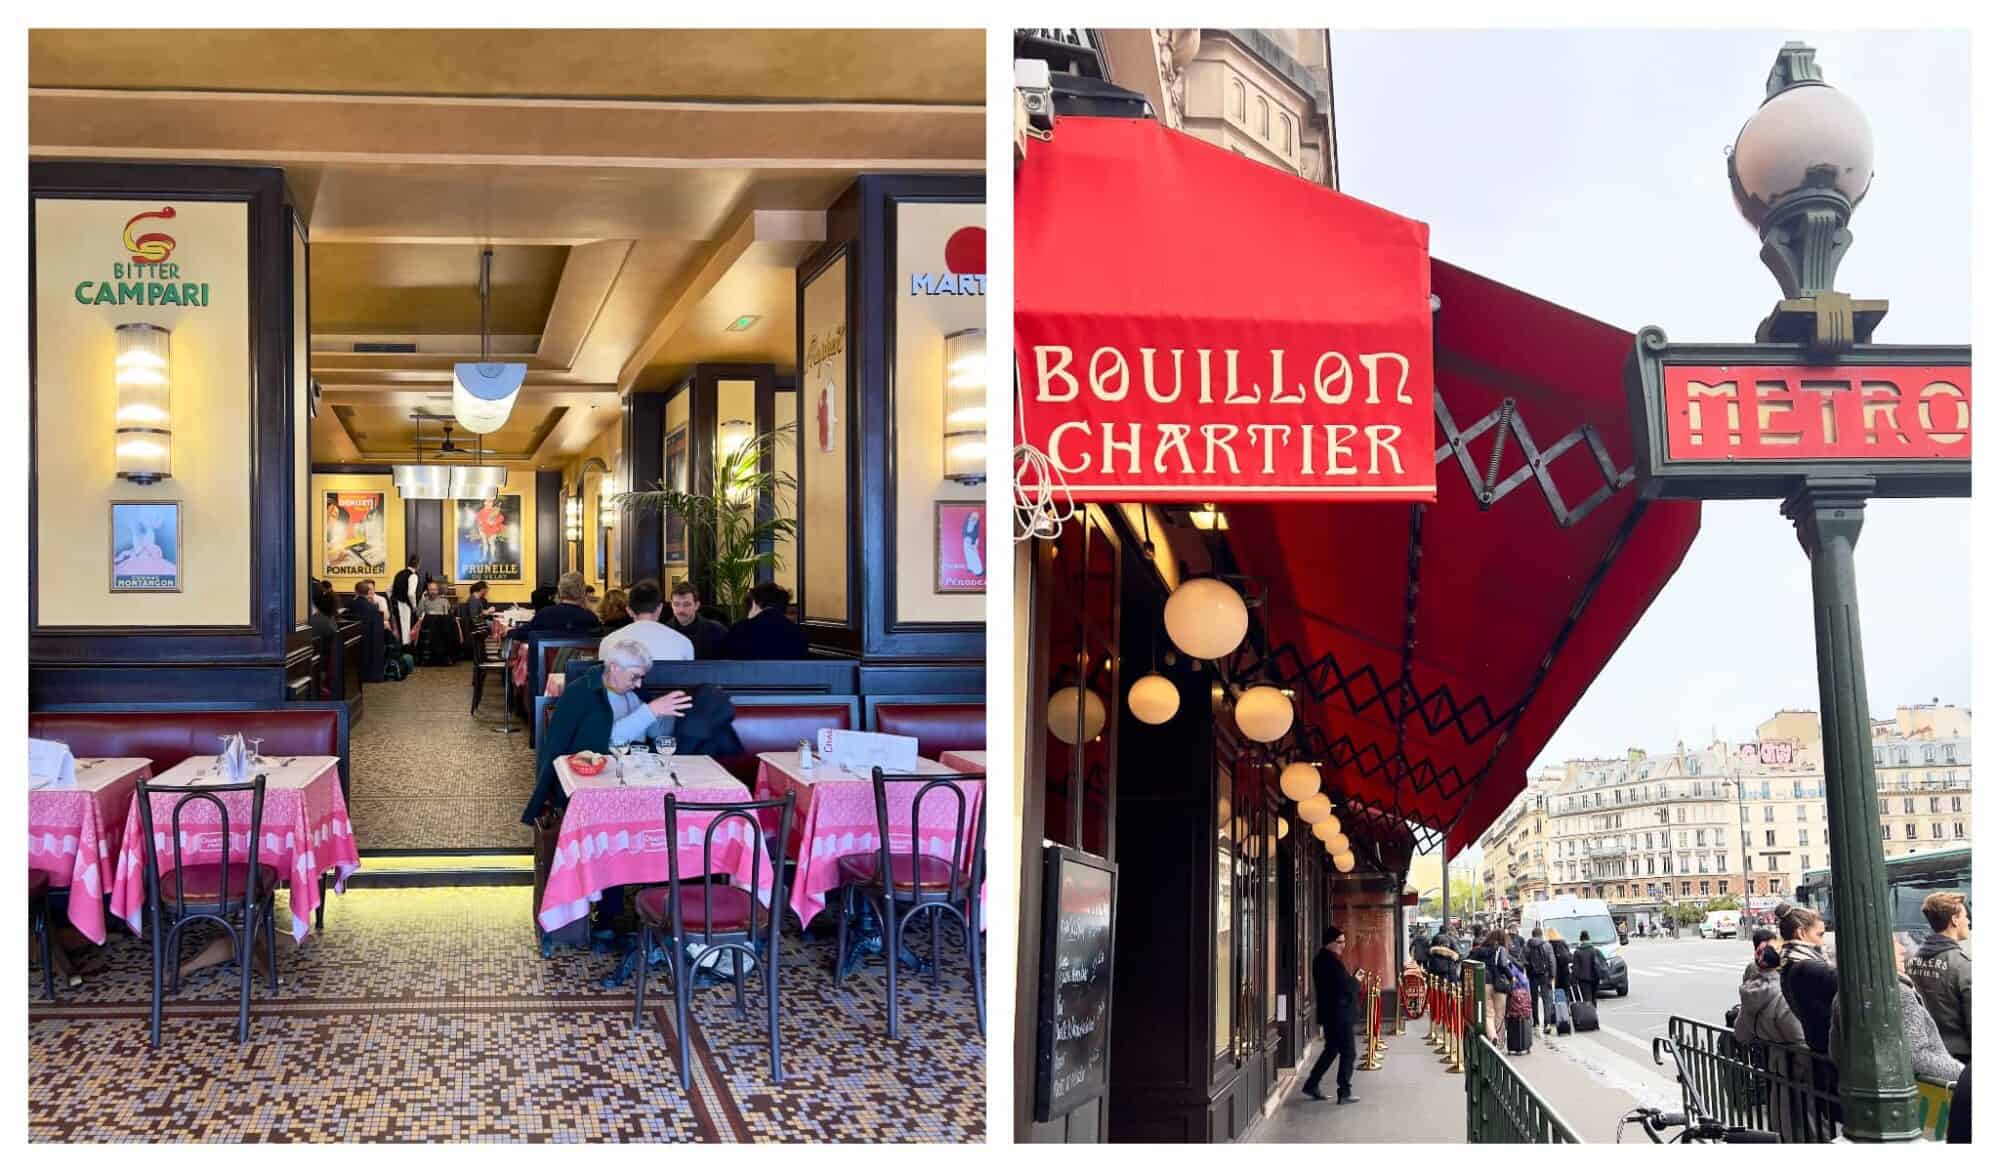 Bouillon Chartier, Paris Gare de l’Est